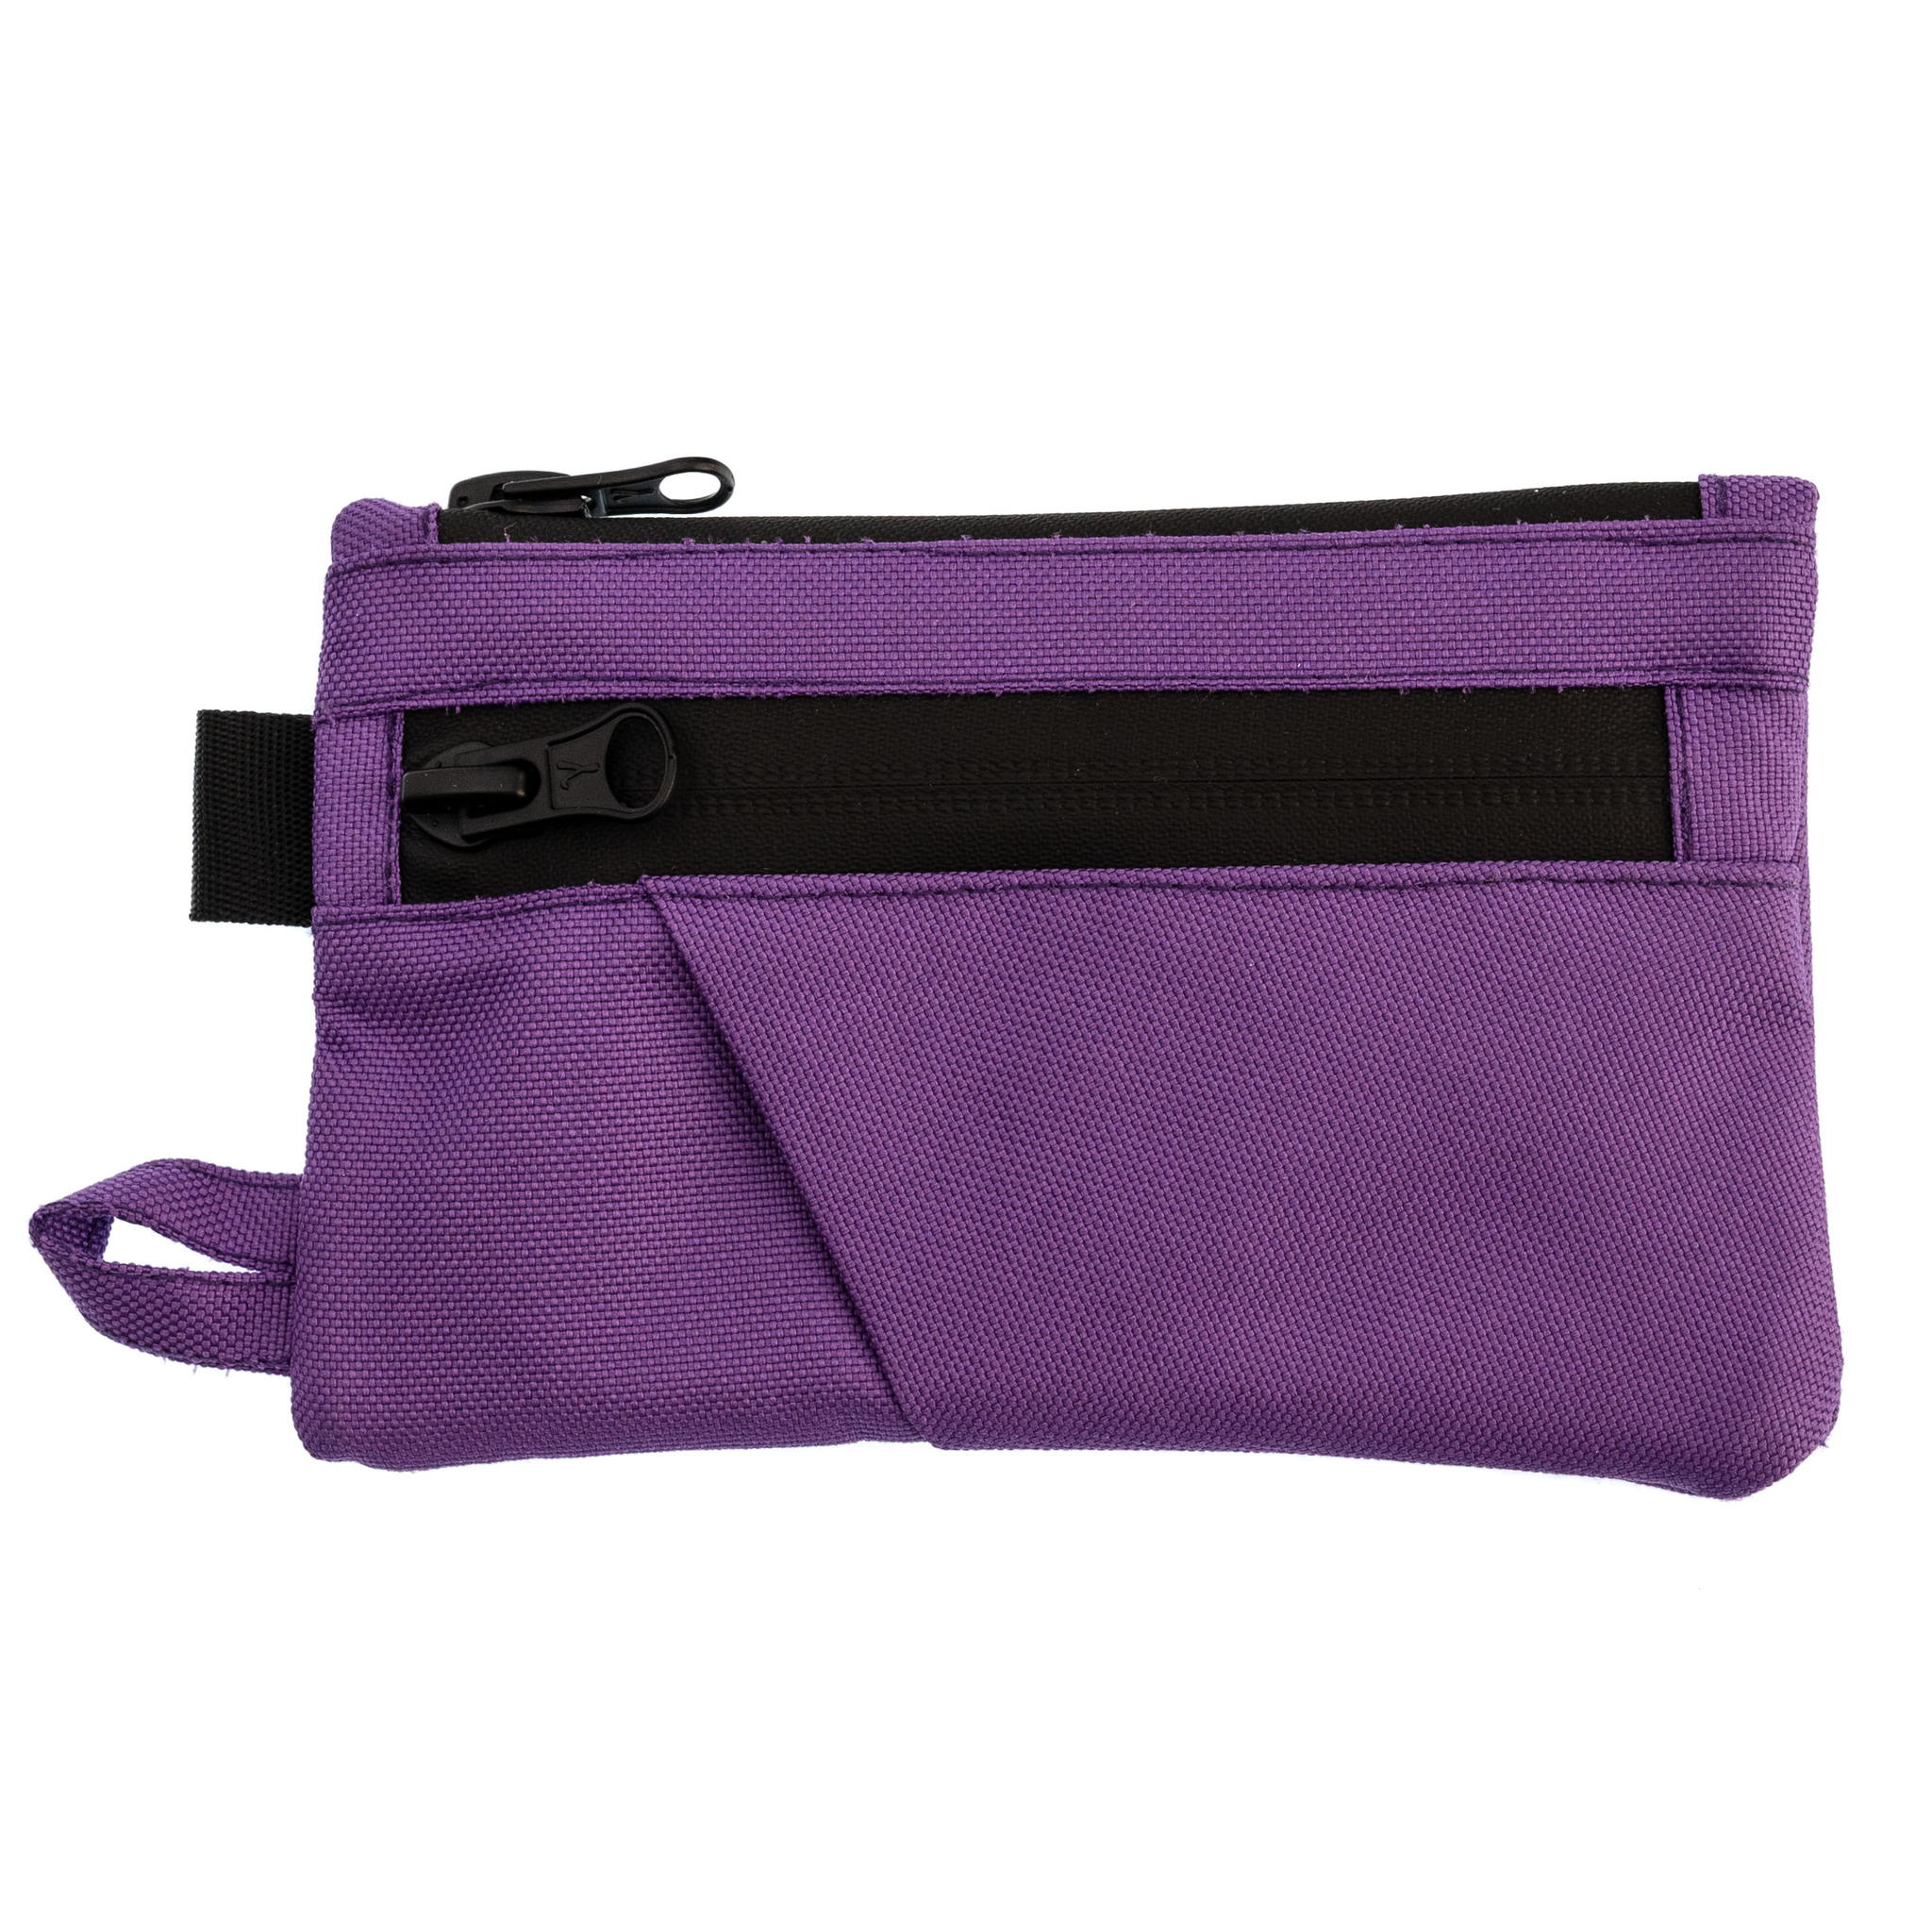 Органайзер (поуч) New Level, фиолетовый рюкзак на молнии наружный карман 2 боковых кармана кошелек фиолетовый